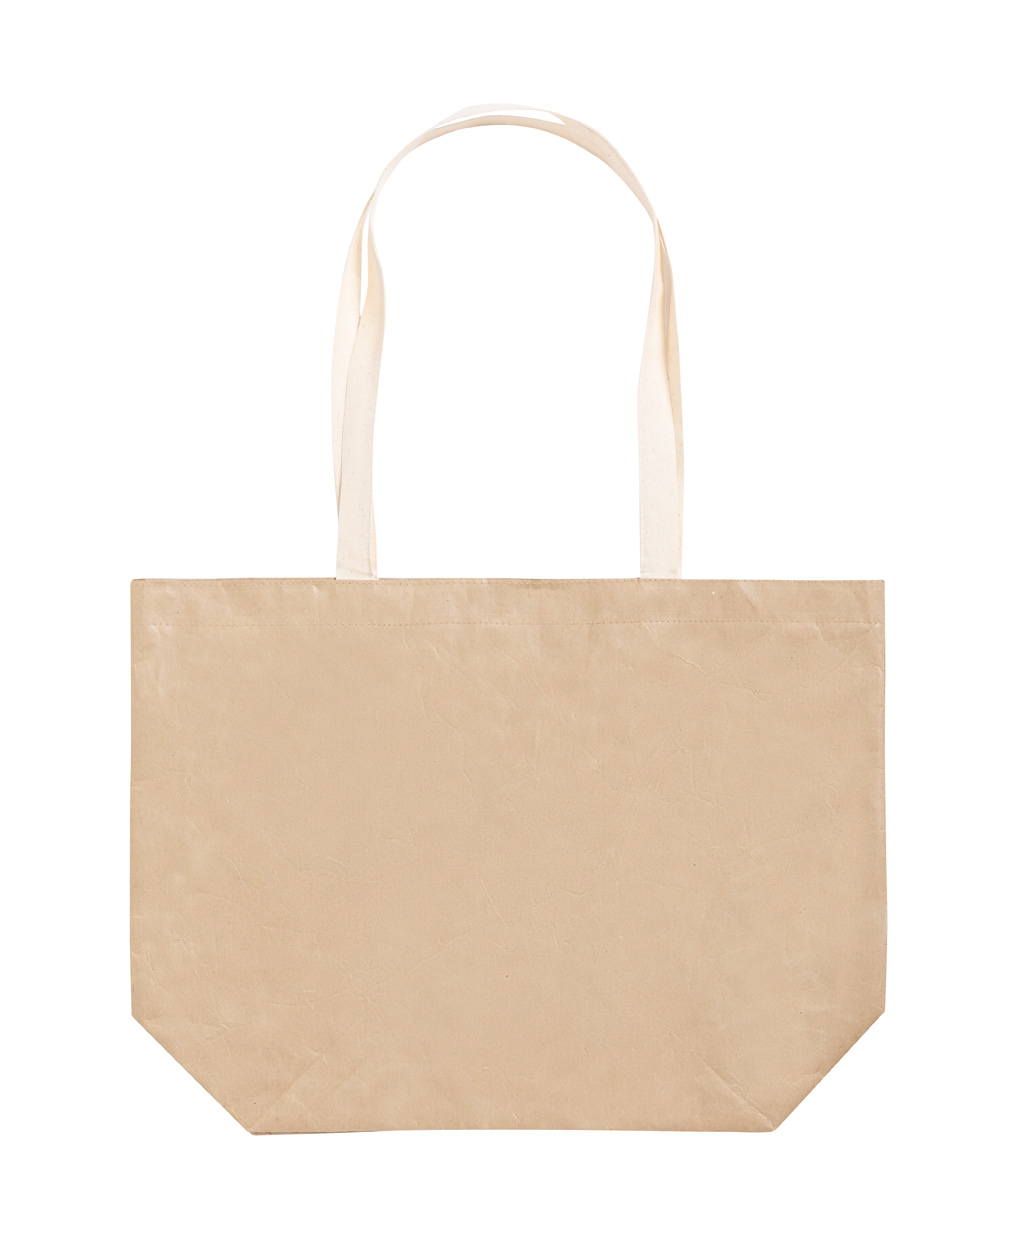 Papírová nákupní taška PALZIM - přírodní / bílá